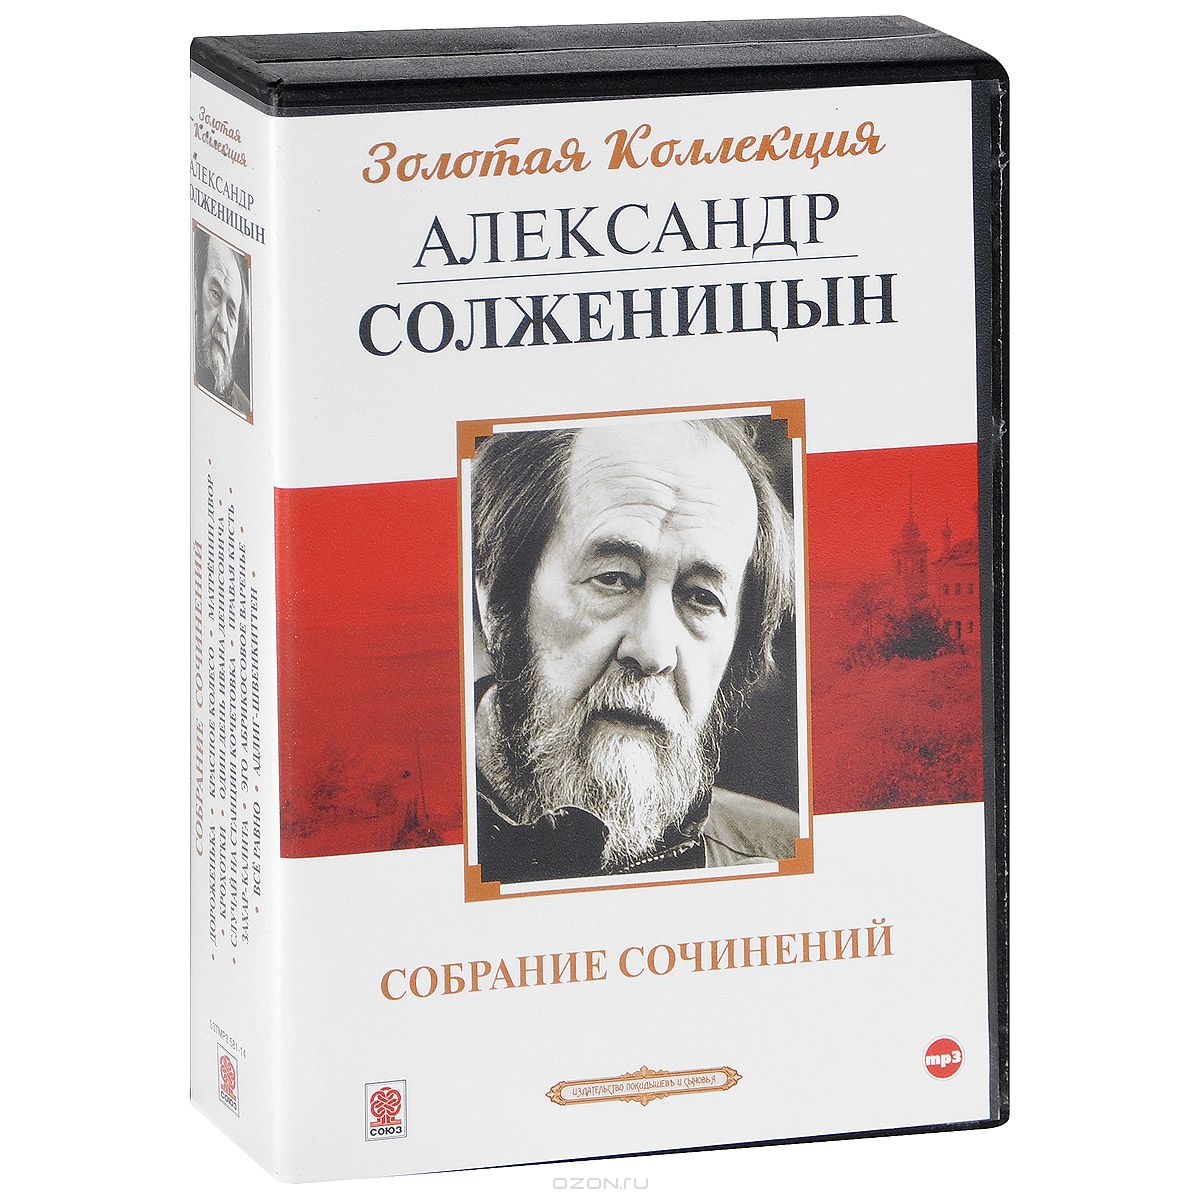 5 произведений солженицына. Книги Солженицына. Обложки книг Солженицына.